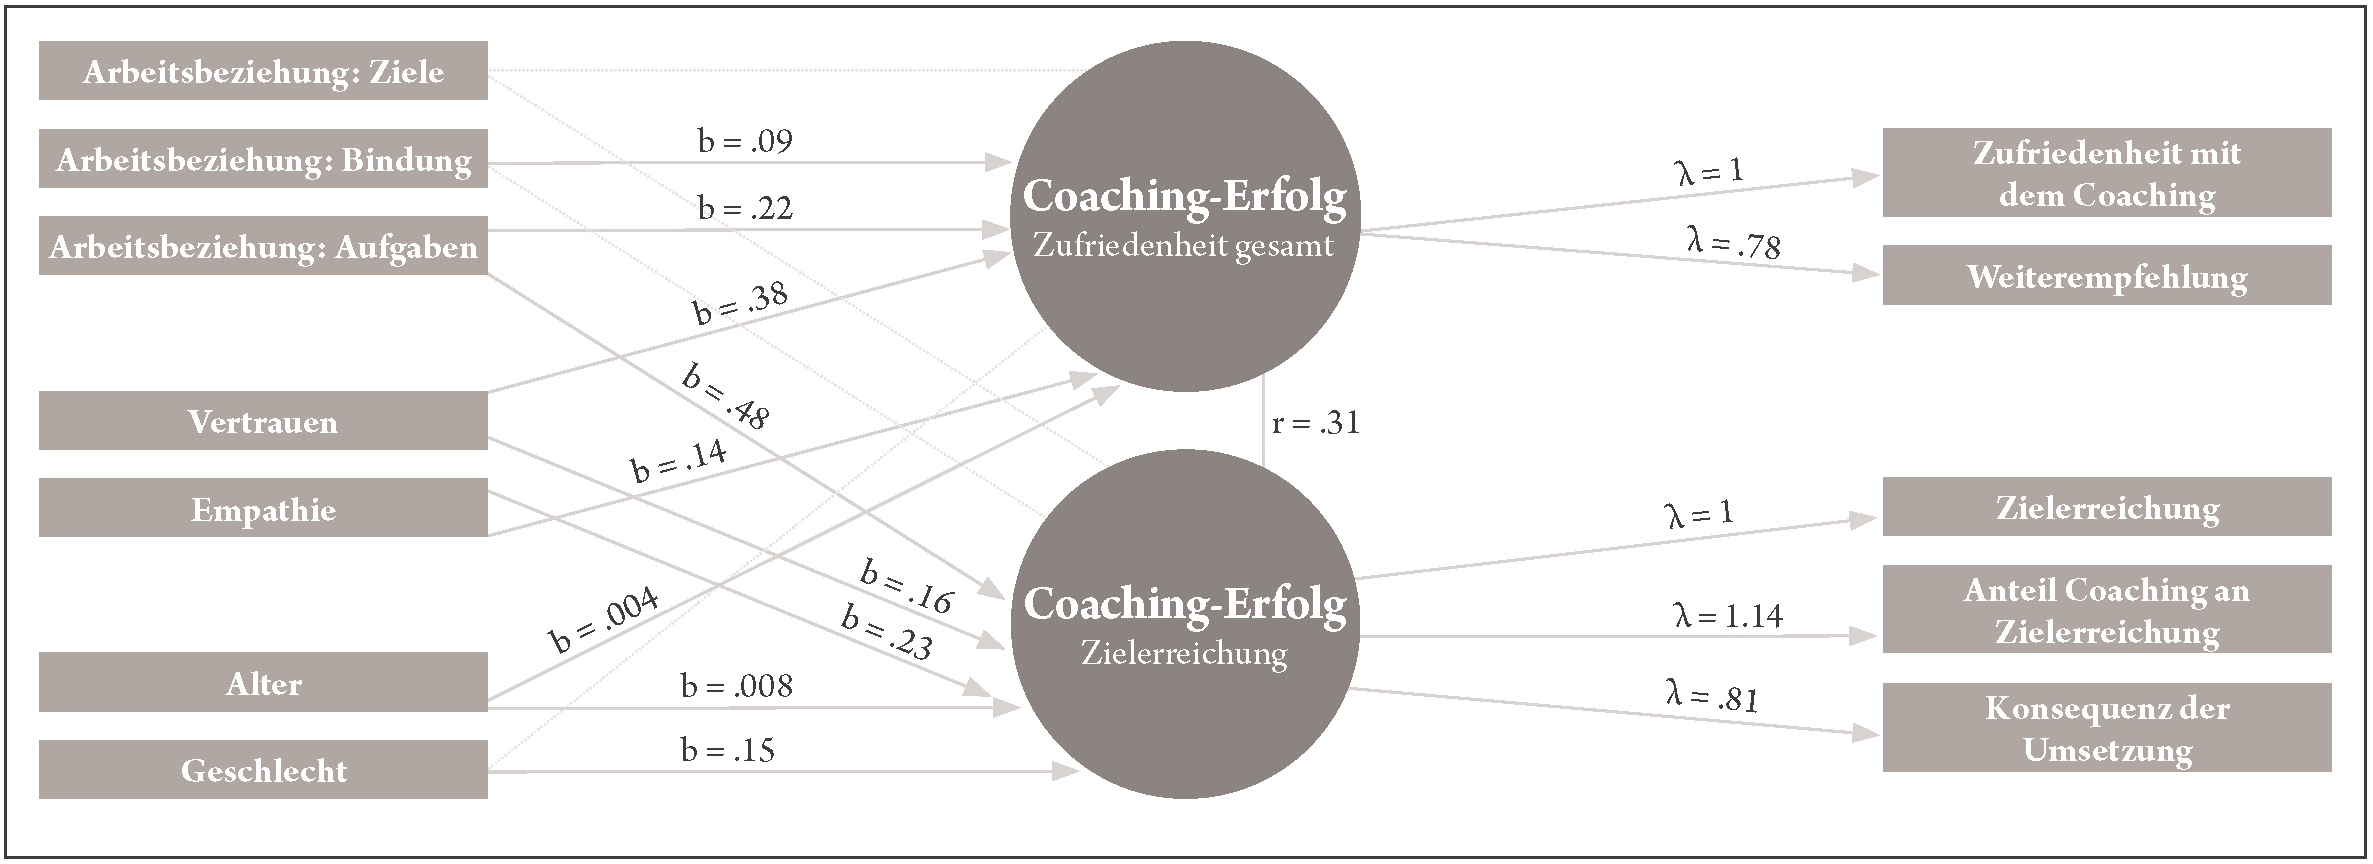 Strukturgleichungsmodell zur Erklärung von Coaching-Erfolg